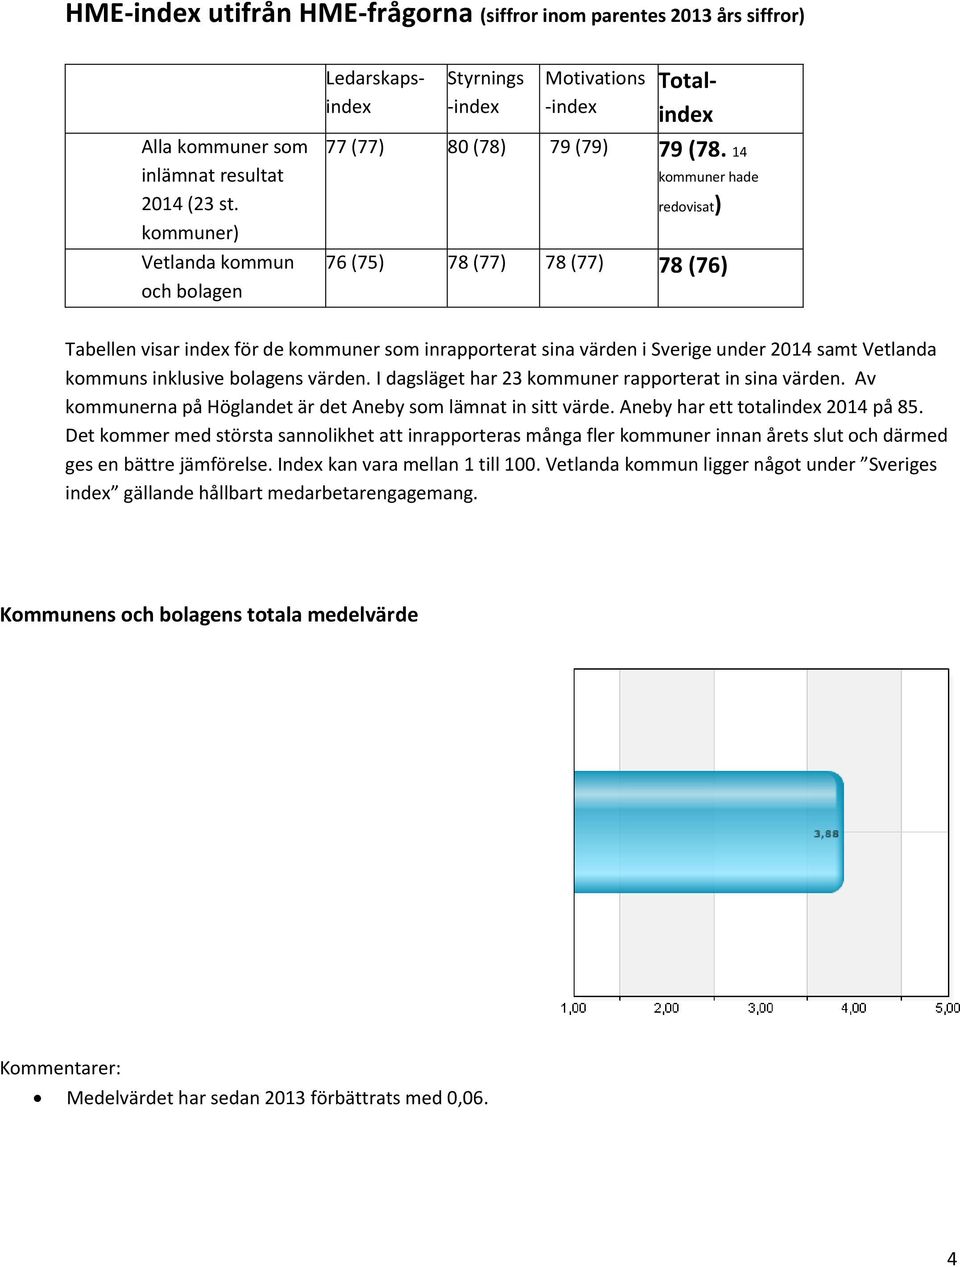 14 kommuner hade redovisat) 76 (75) 78 (77) 78 (77) 78 (76) Tabellen visar index för de kommuner som inrapporterat sina värden i Sverige under 2014 samt Vetlanda kommuns inklusive bolagens värden.